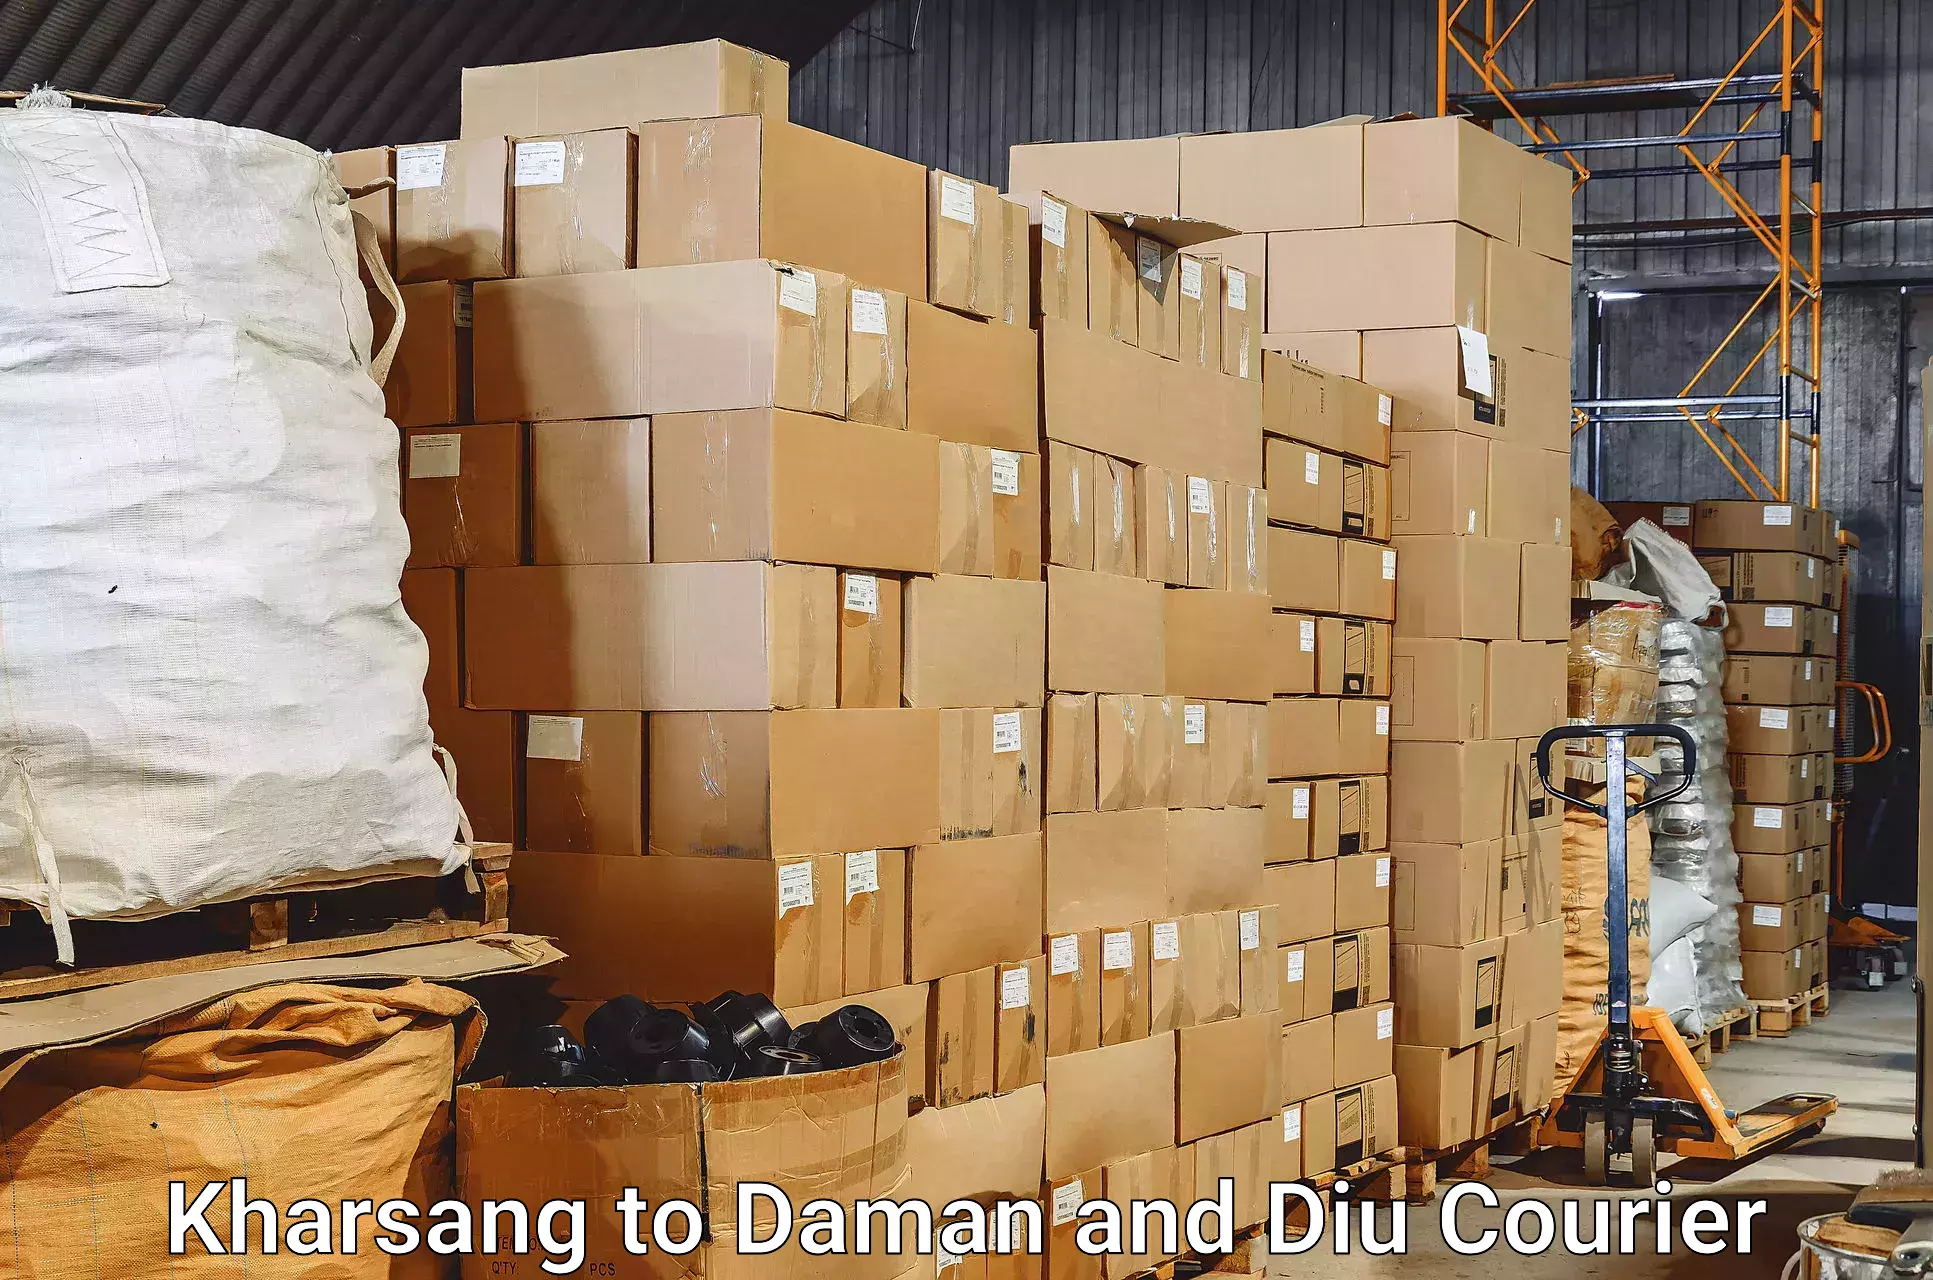 Baggage shipping service Kharsang to Daman and Diu